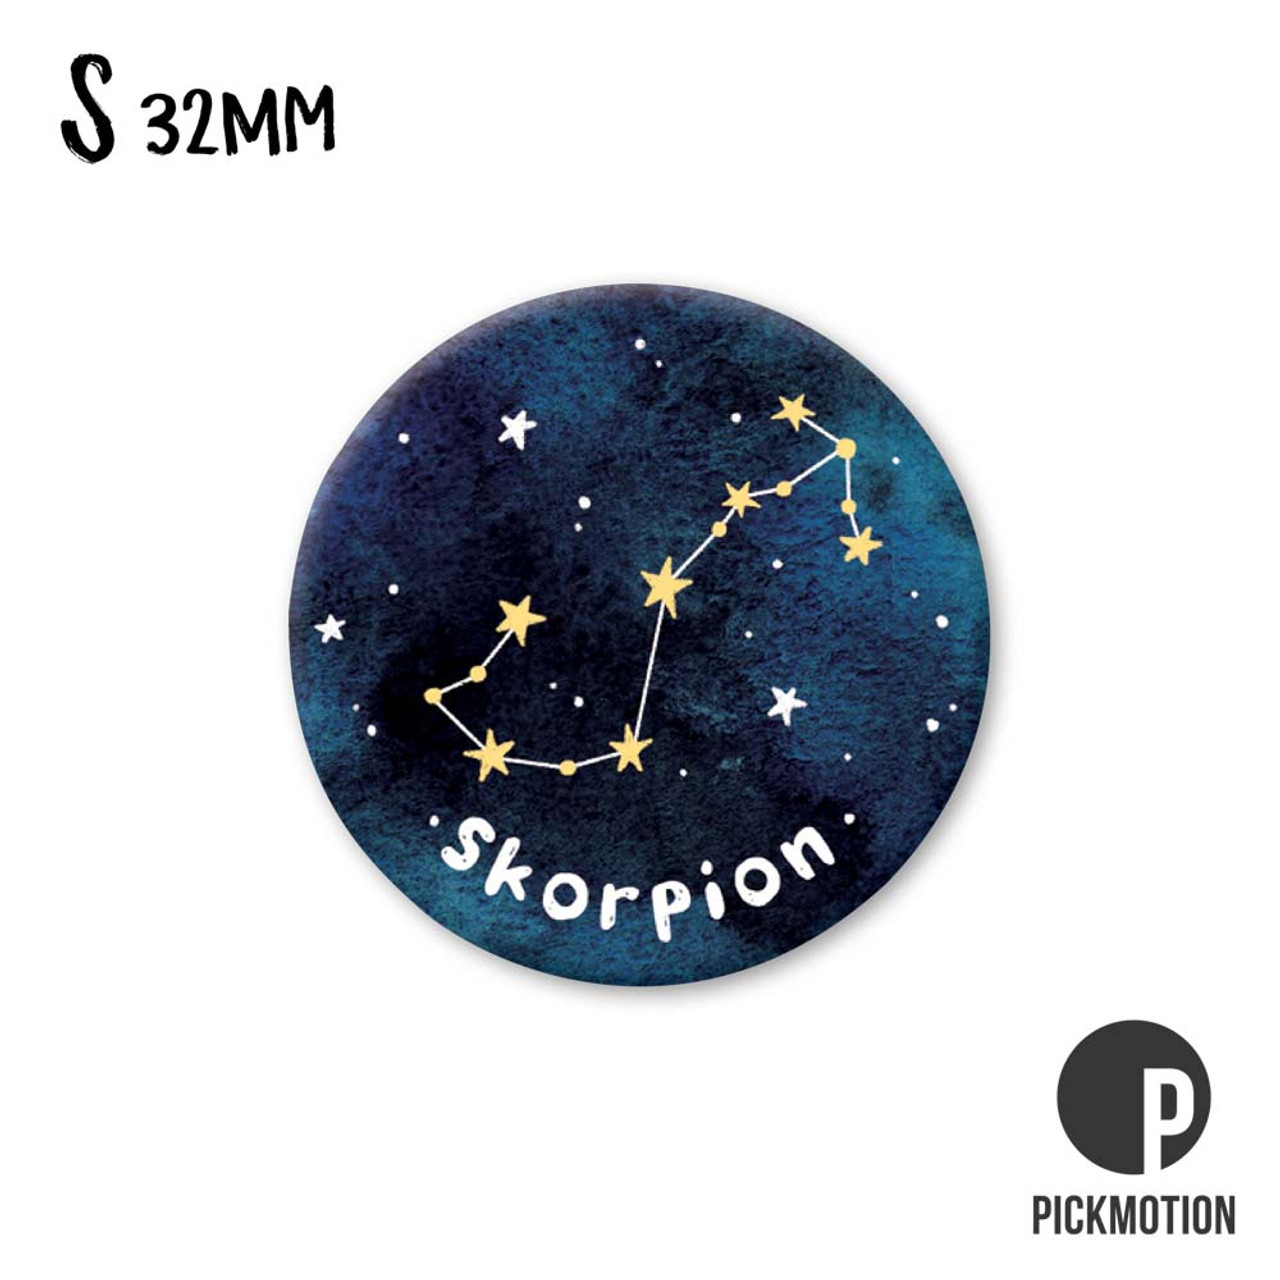 Kühlschrank-Magnet - Klein - Sternzeichen Skorpion- MSA 0652-DE -  Pickmotion - KAUFLADEN